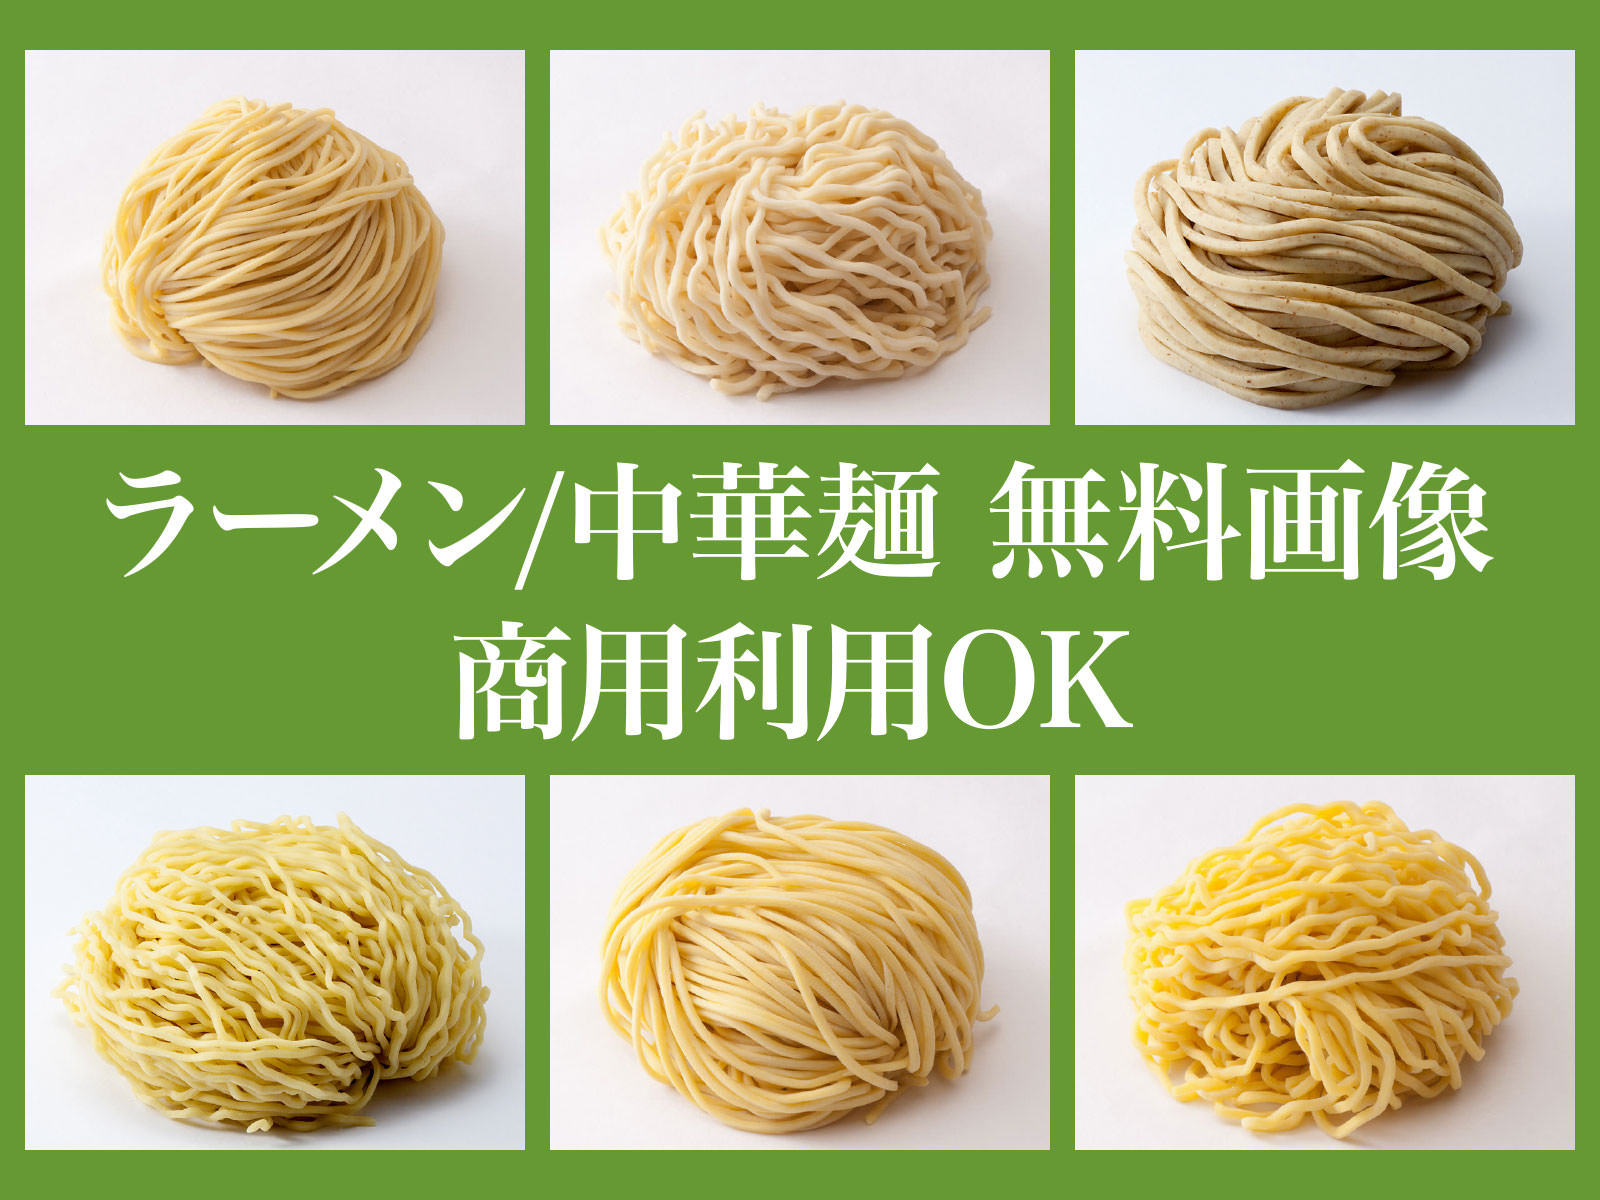 商用可 無料 フリー ラーメン 中華麺 写真 画像素材集 業務用生麺50年 シクヤ製麺